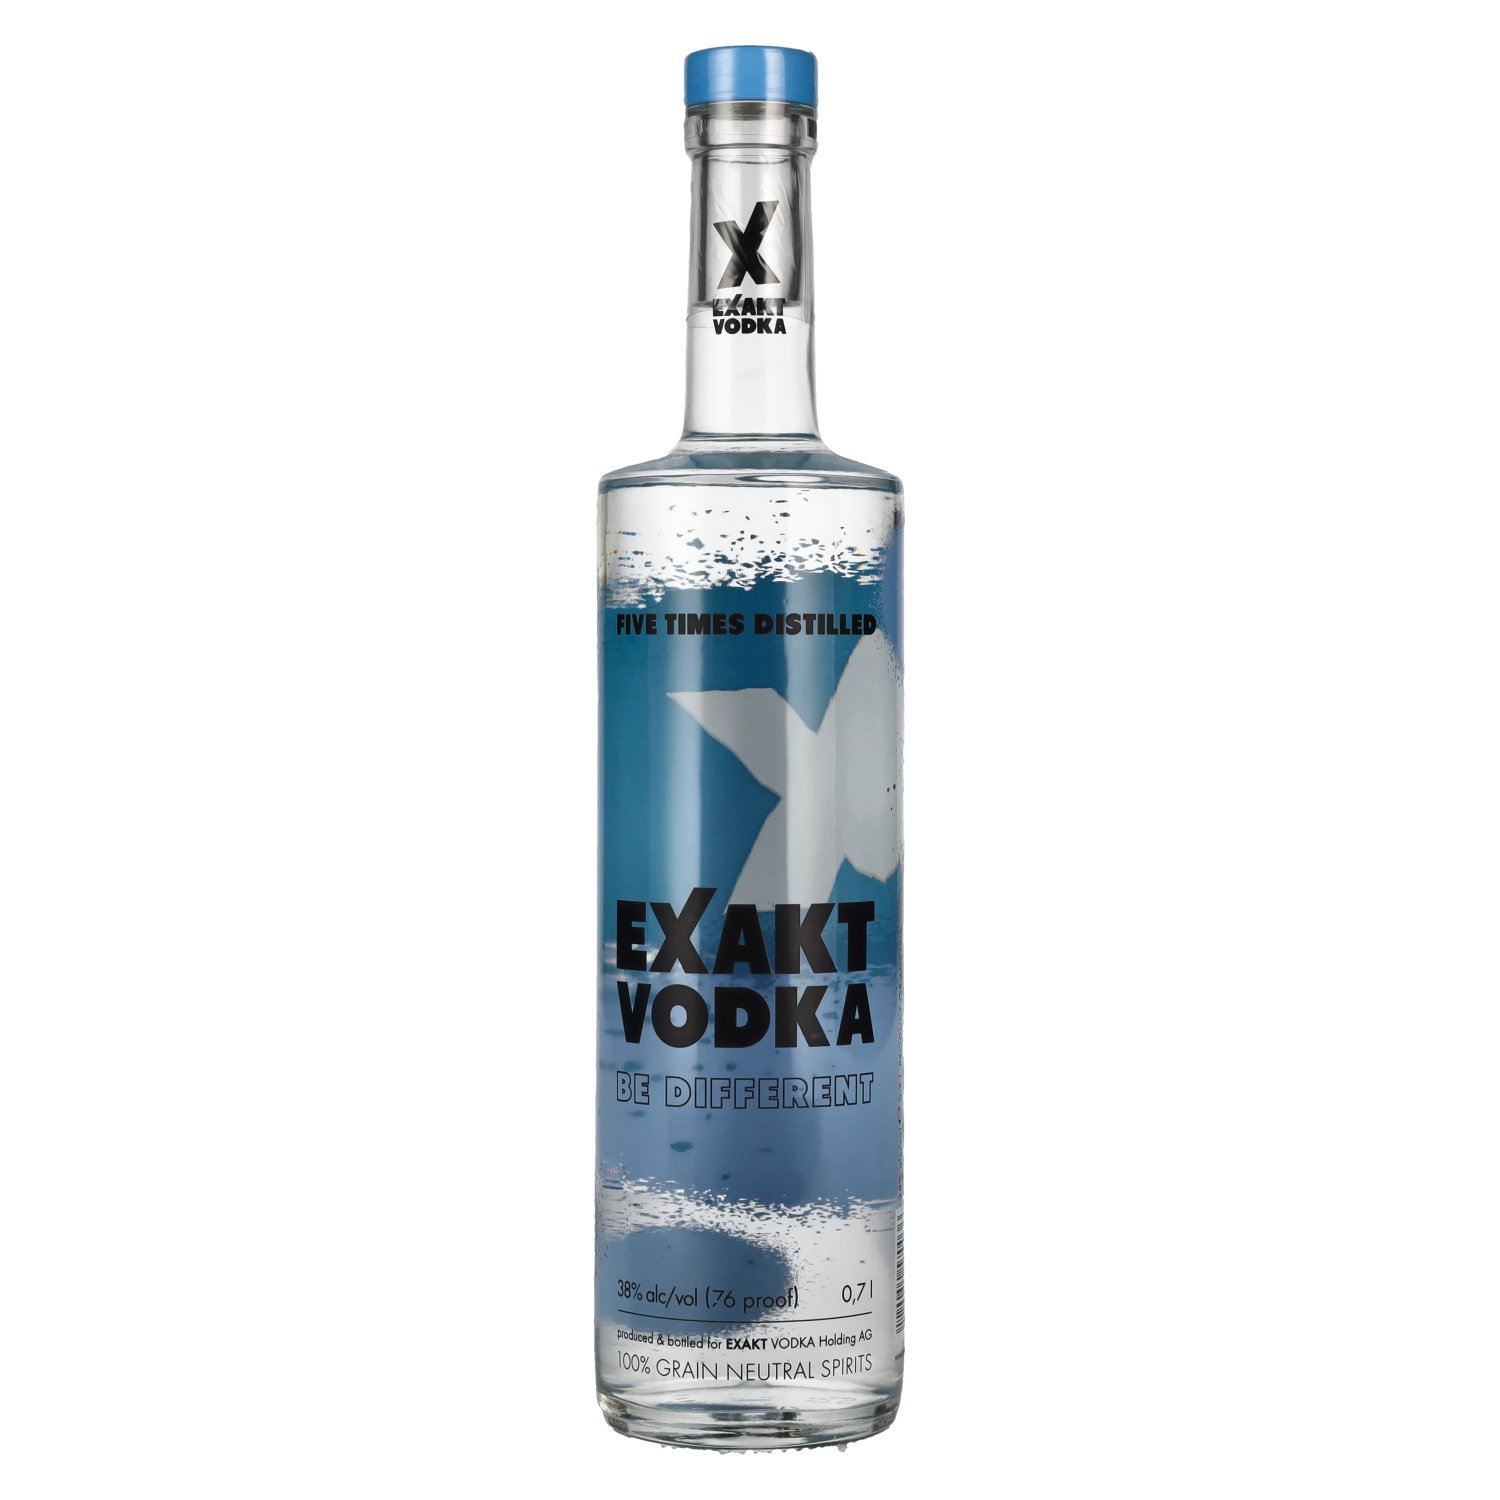 Exakt Vodka 38% Vol. 0,7l - delicando